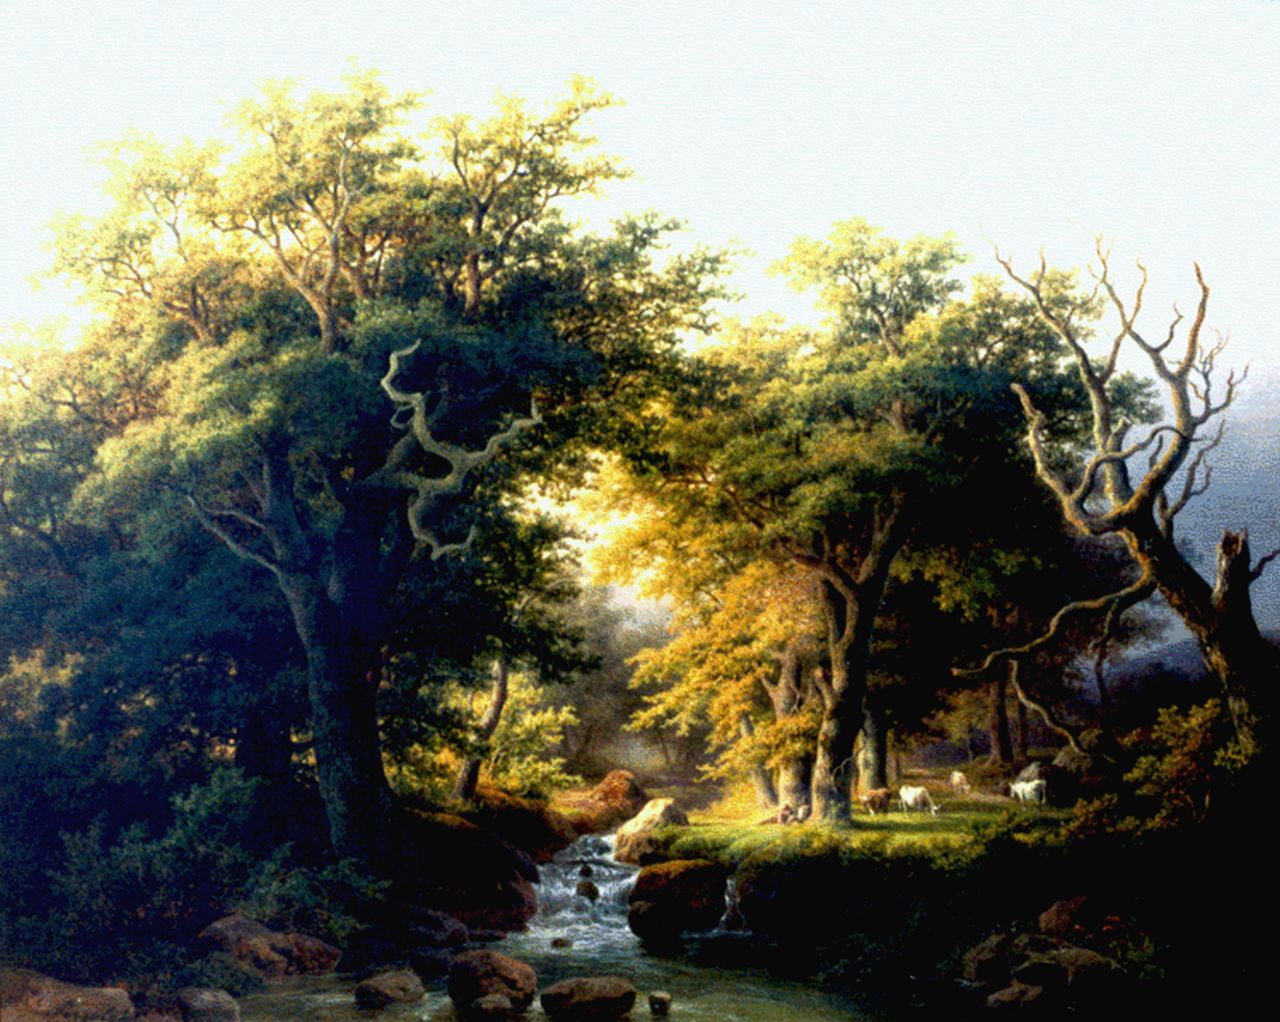 Pizzolatto E.  | Eugenio Pizzolatto, A stream in a forest landscape, oil on canvas 55.1 x 68.5 cm, signed l.l.